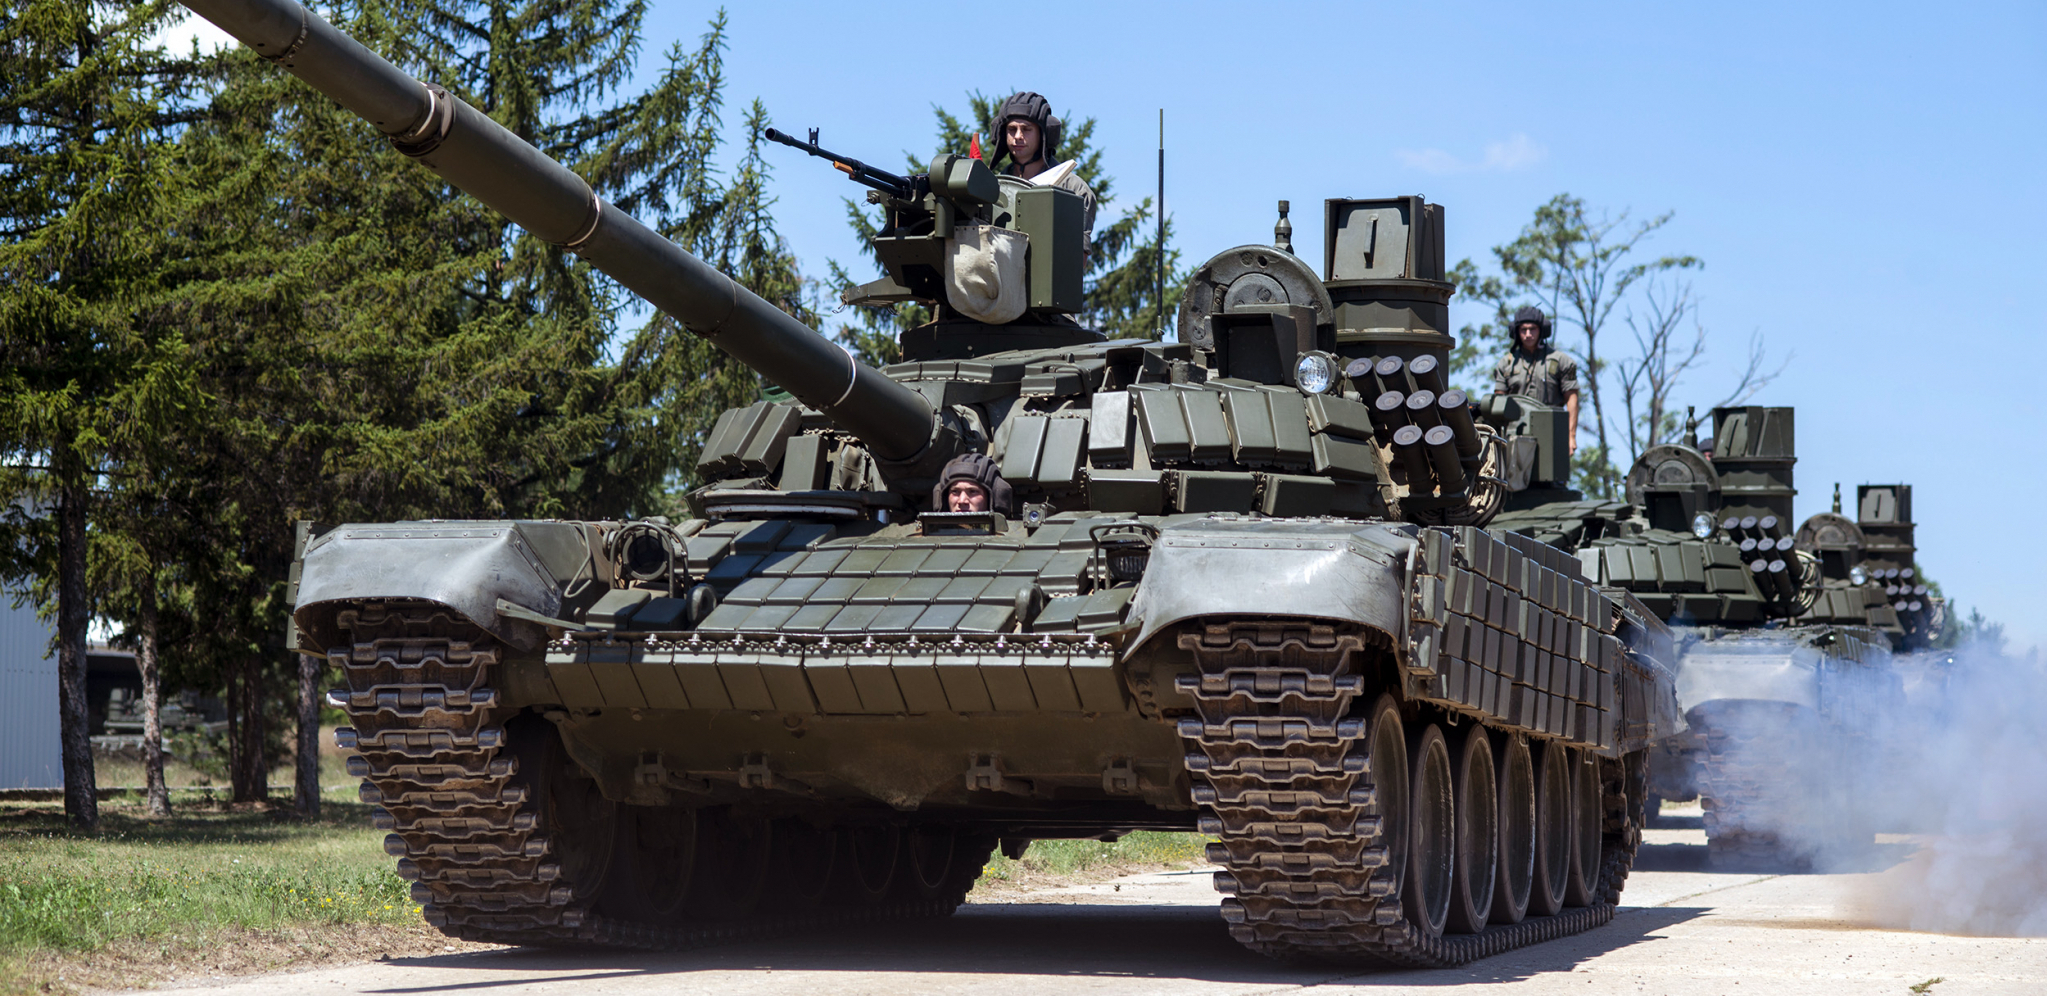 VOJSKA SRBIJE SE NE ZAUSTAVLJA Obuka vojnika na tenkovima T-72 MS (FOTO)